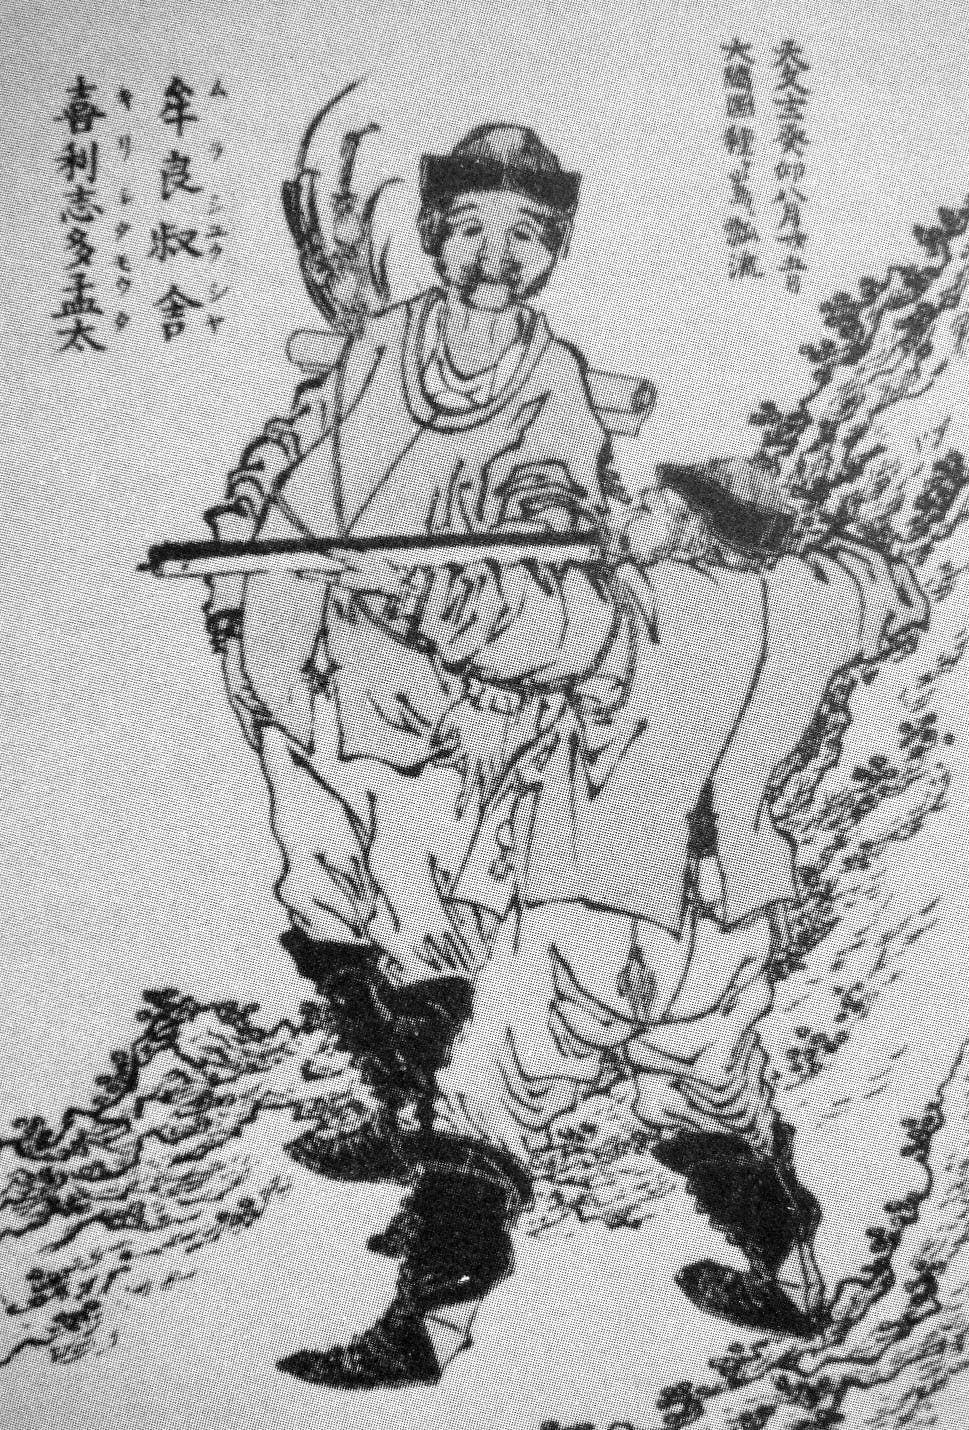 رسم تخيلي لأنطونيو موتا وهو يعلم أحد اليابانيين طريقة استخدامم البندقية